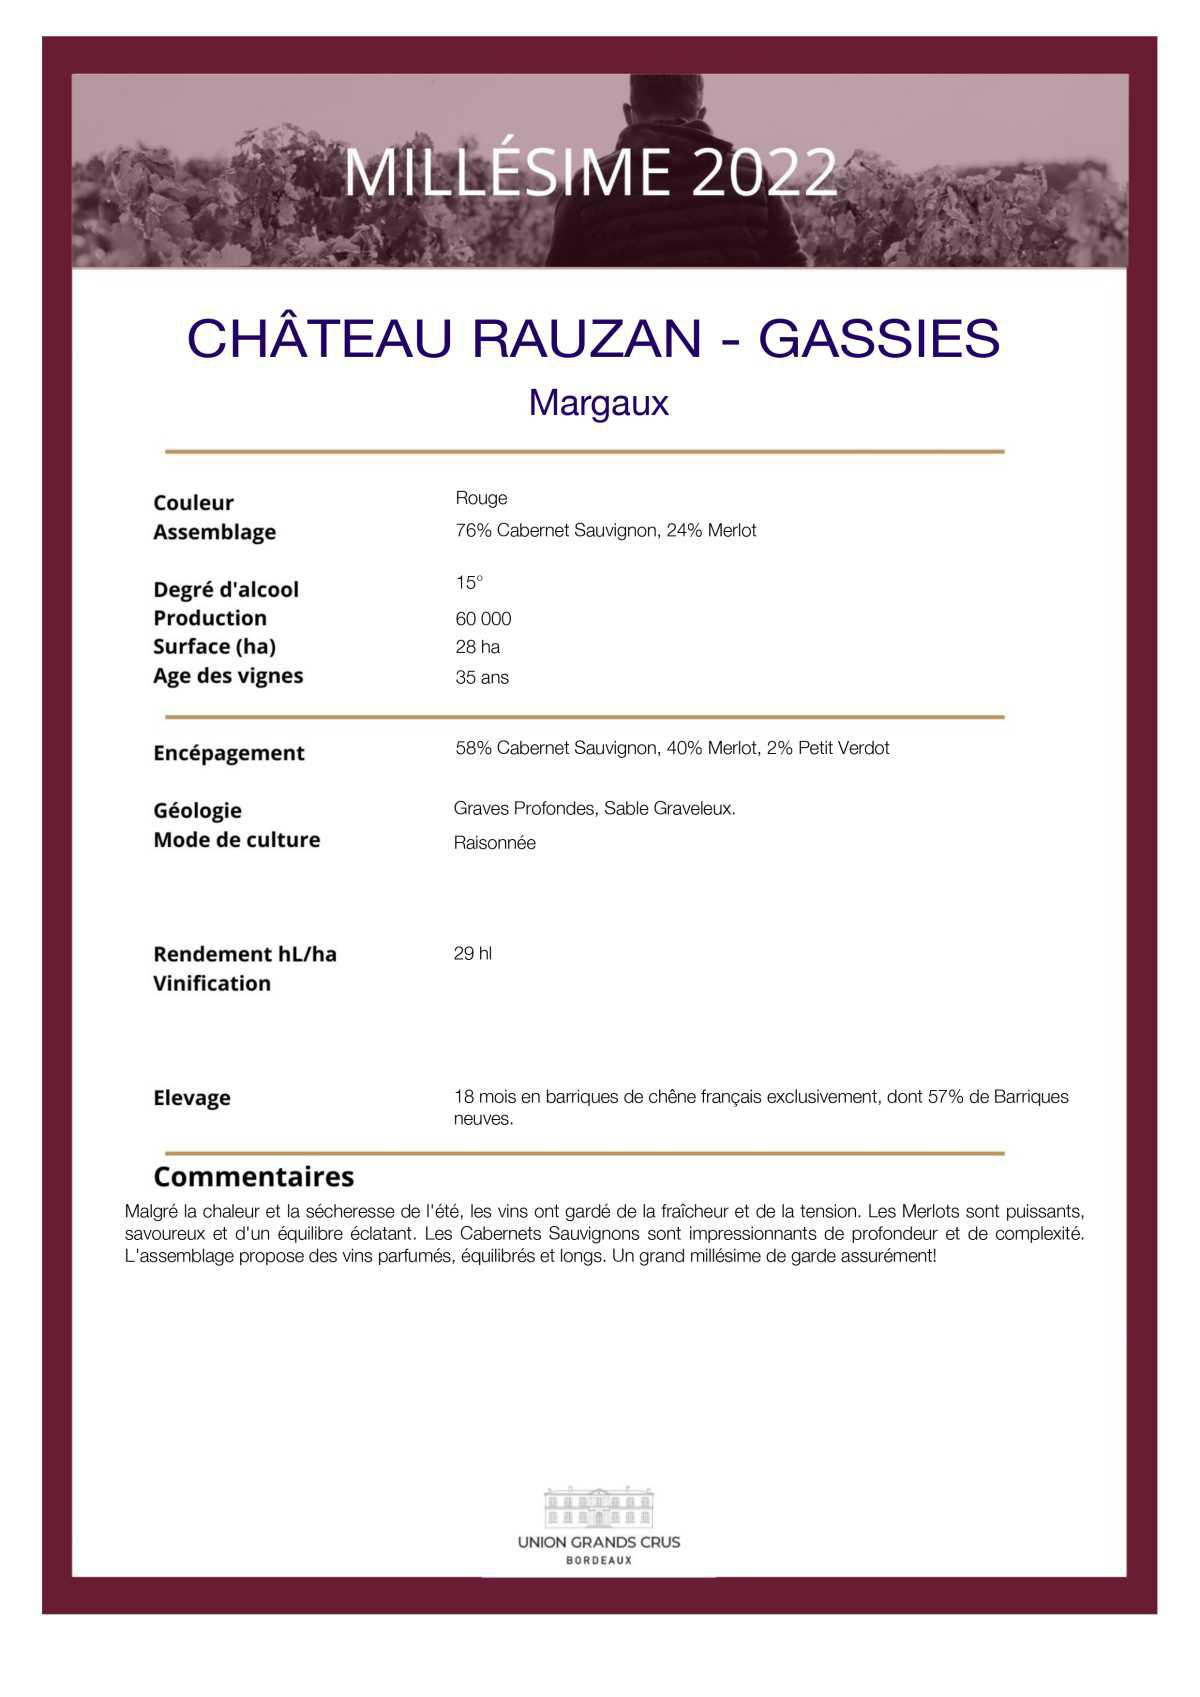  Château Rauzan - Gassies 